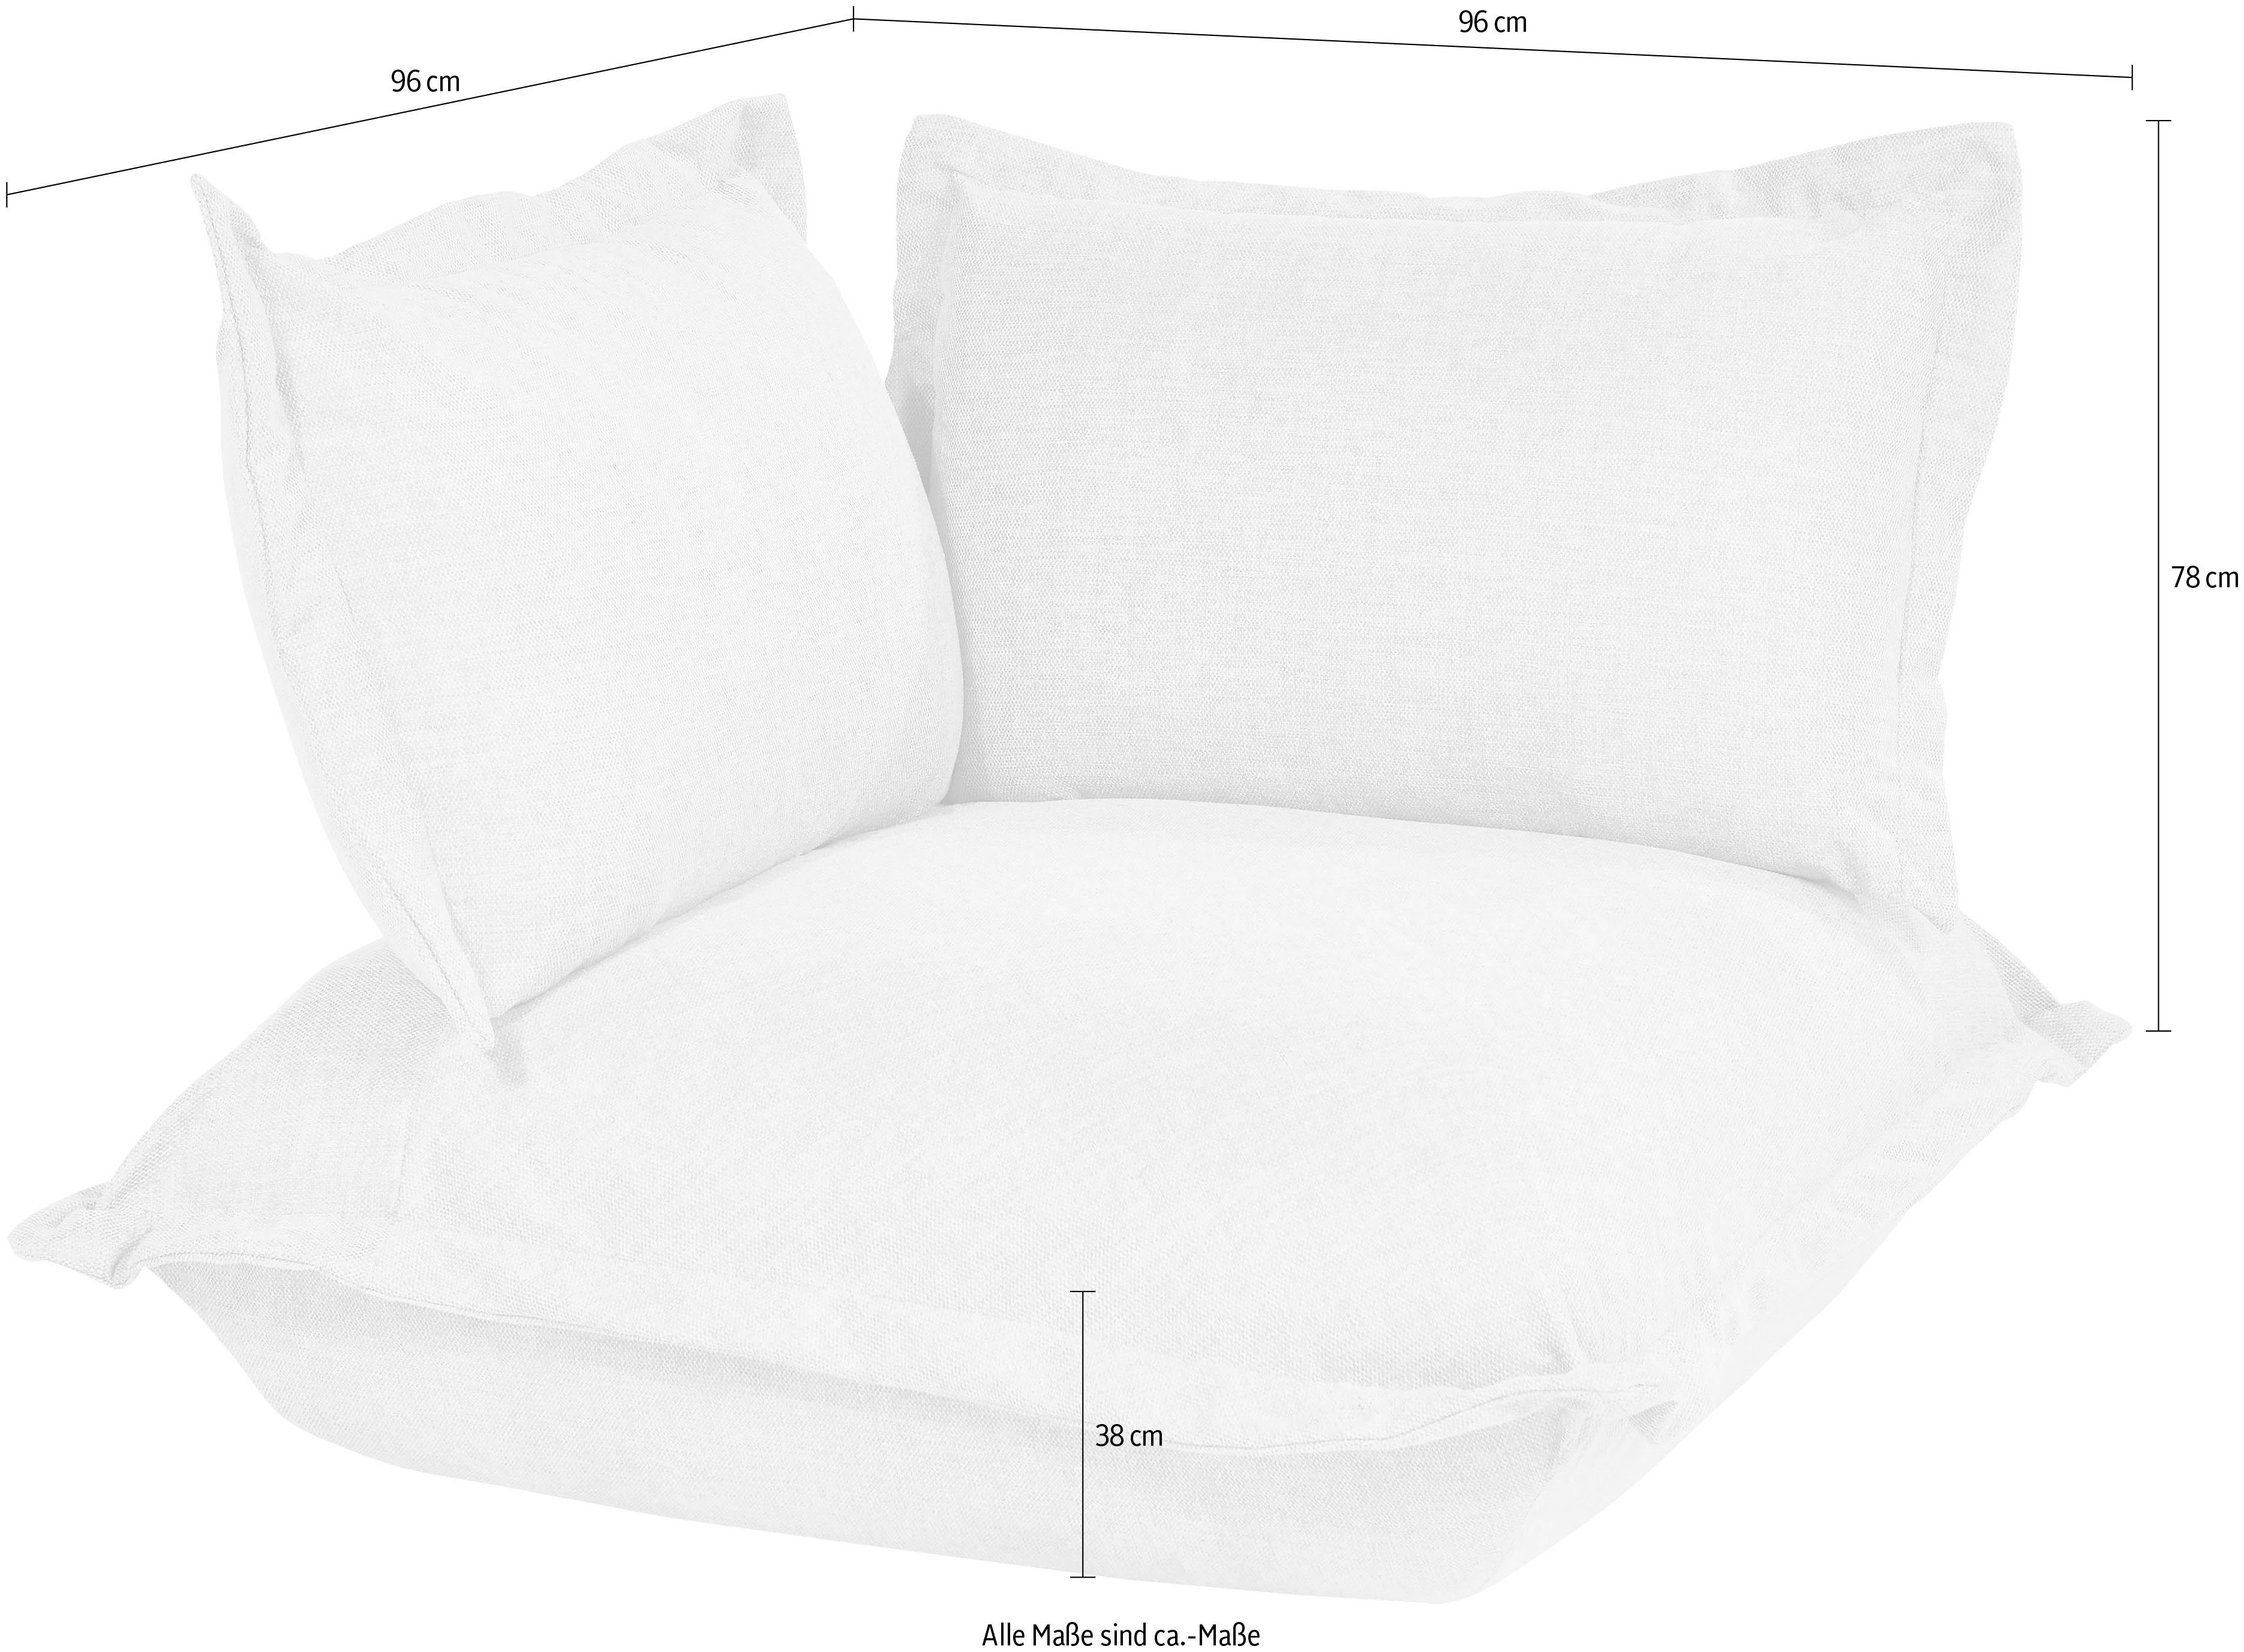 TOM TAILOR HOME Sofa-Eckelement Cushion, Kaltschaumpolsterung Kissenlook, softer mit im lässigen